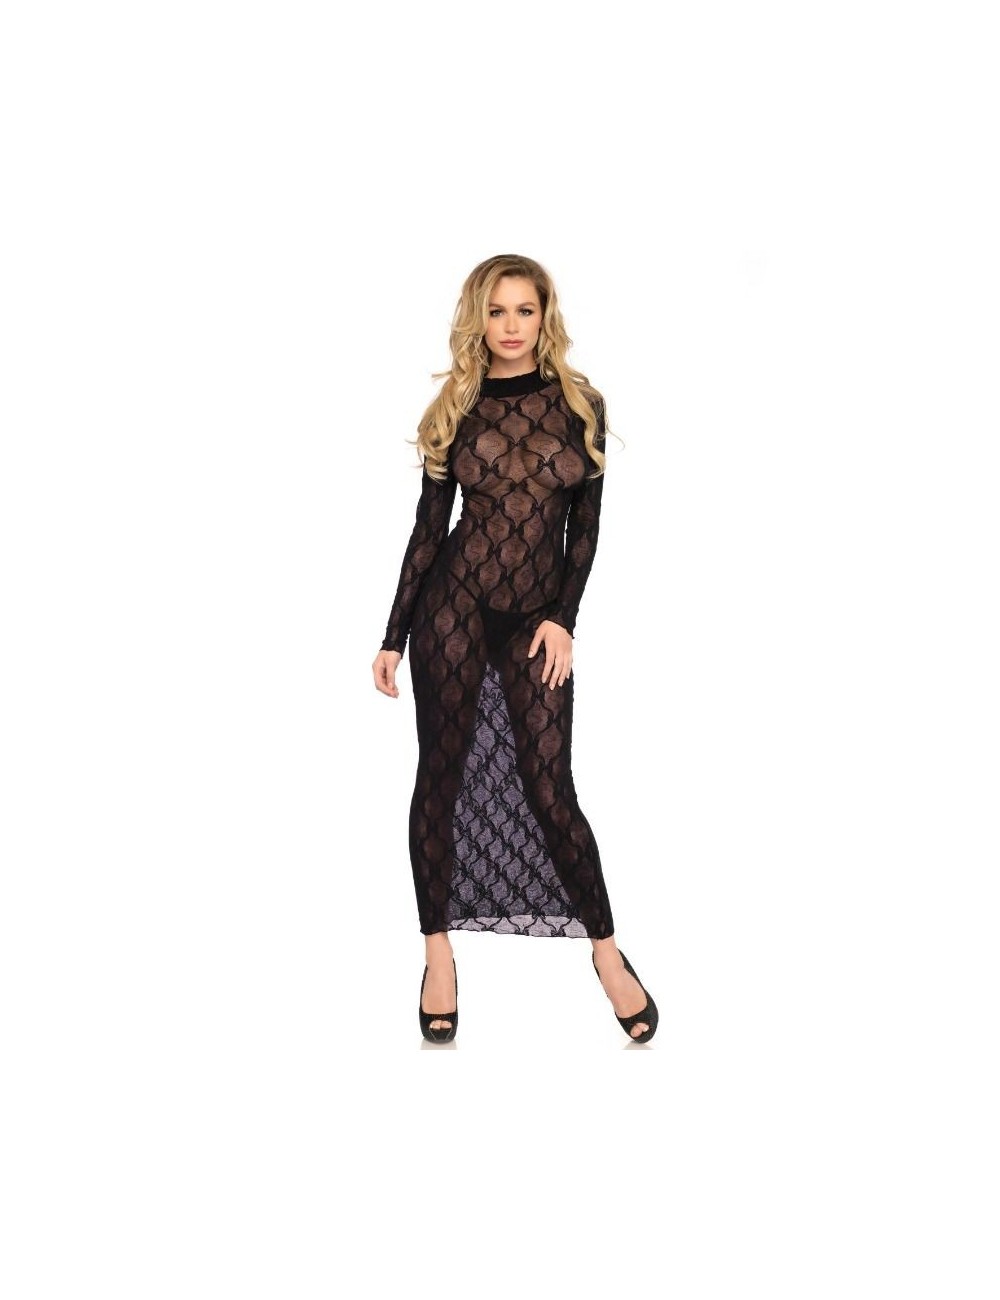 Lingerie - Robes et jupes sexy - Leg avenue robe longue noire taille unique - Leg Avenue Dresses/vestidos